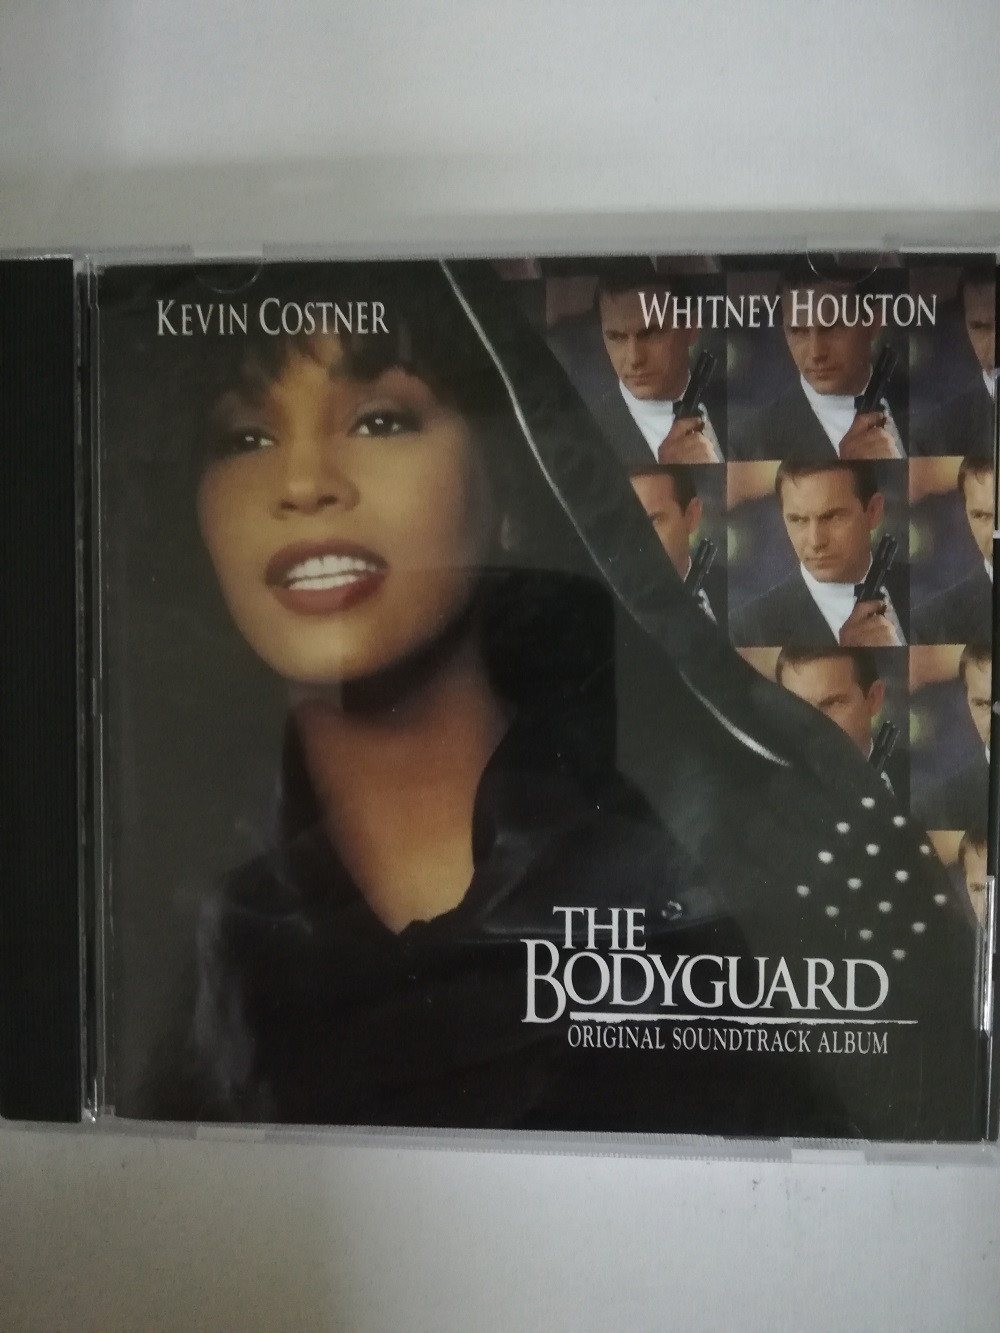 Imagen CD THE BODYGUARD - ORIGINAL SOUNDTRACK ALBUM